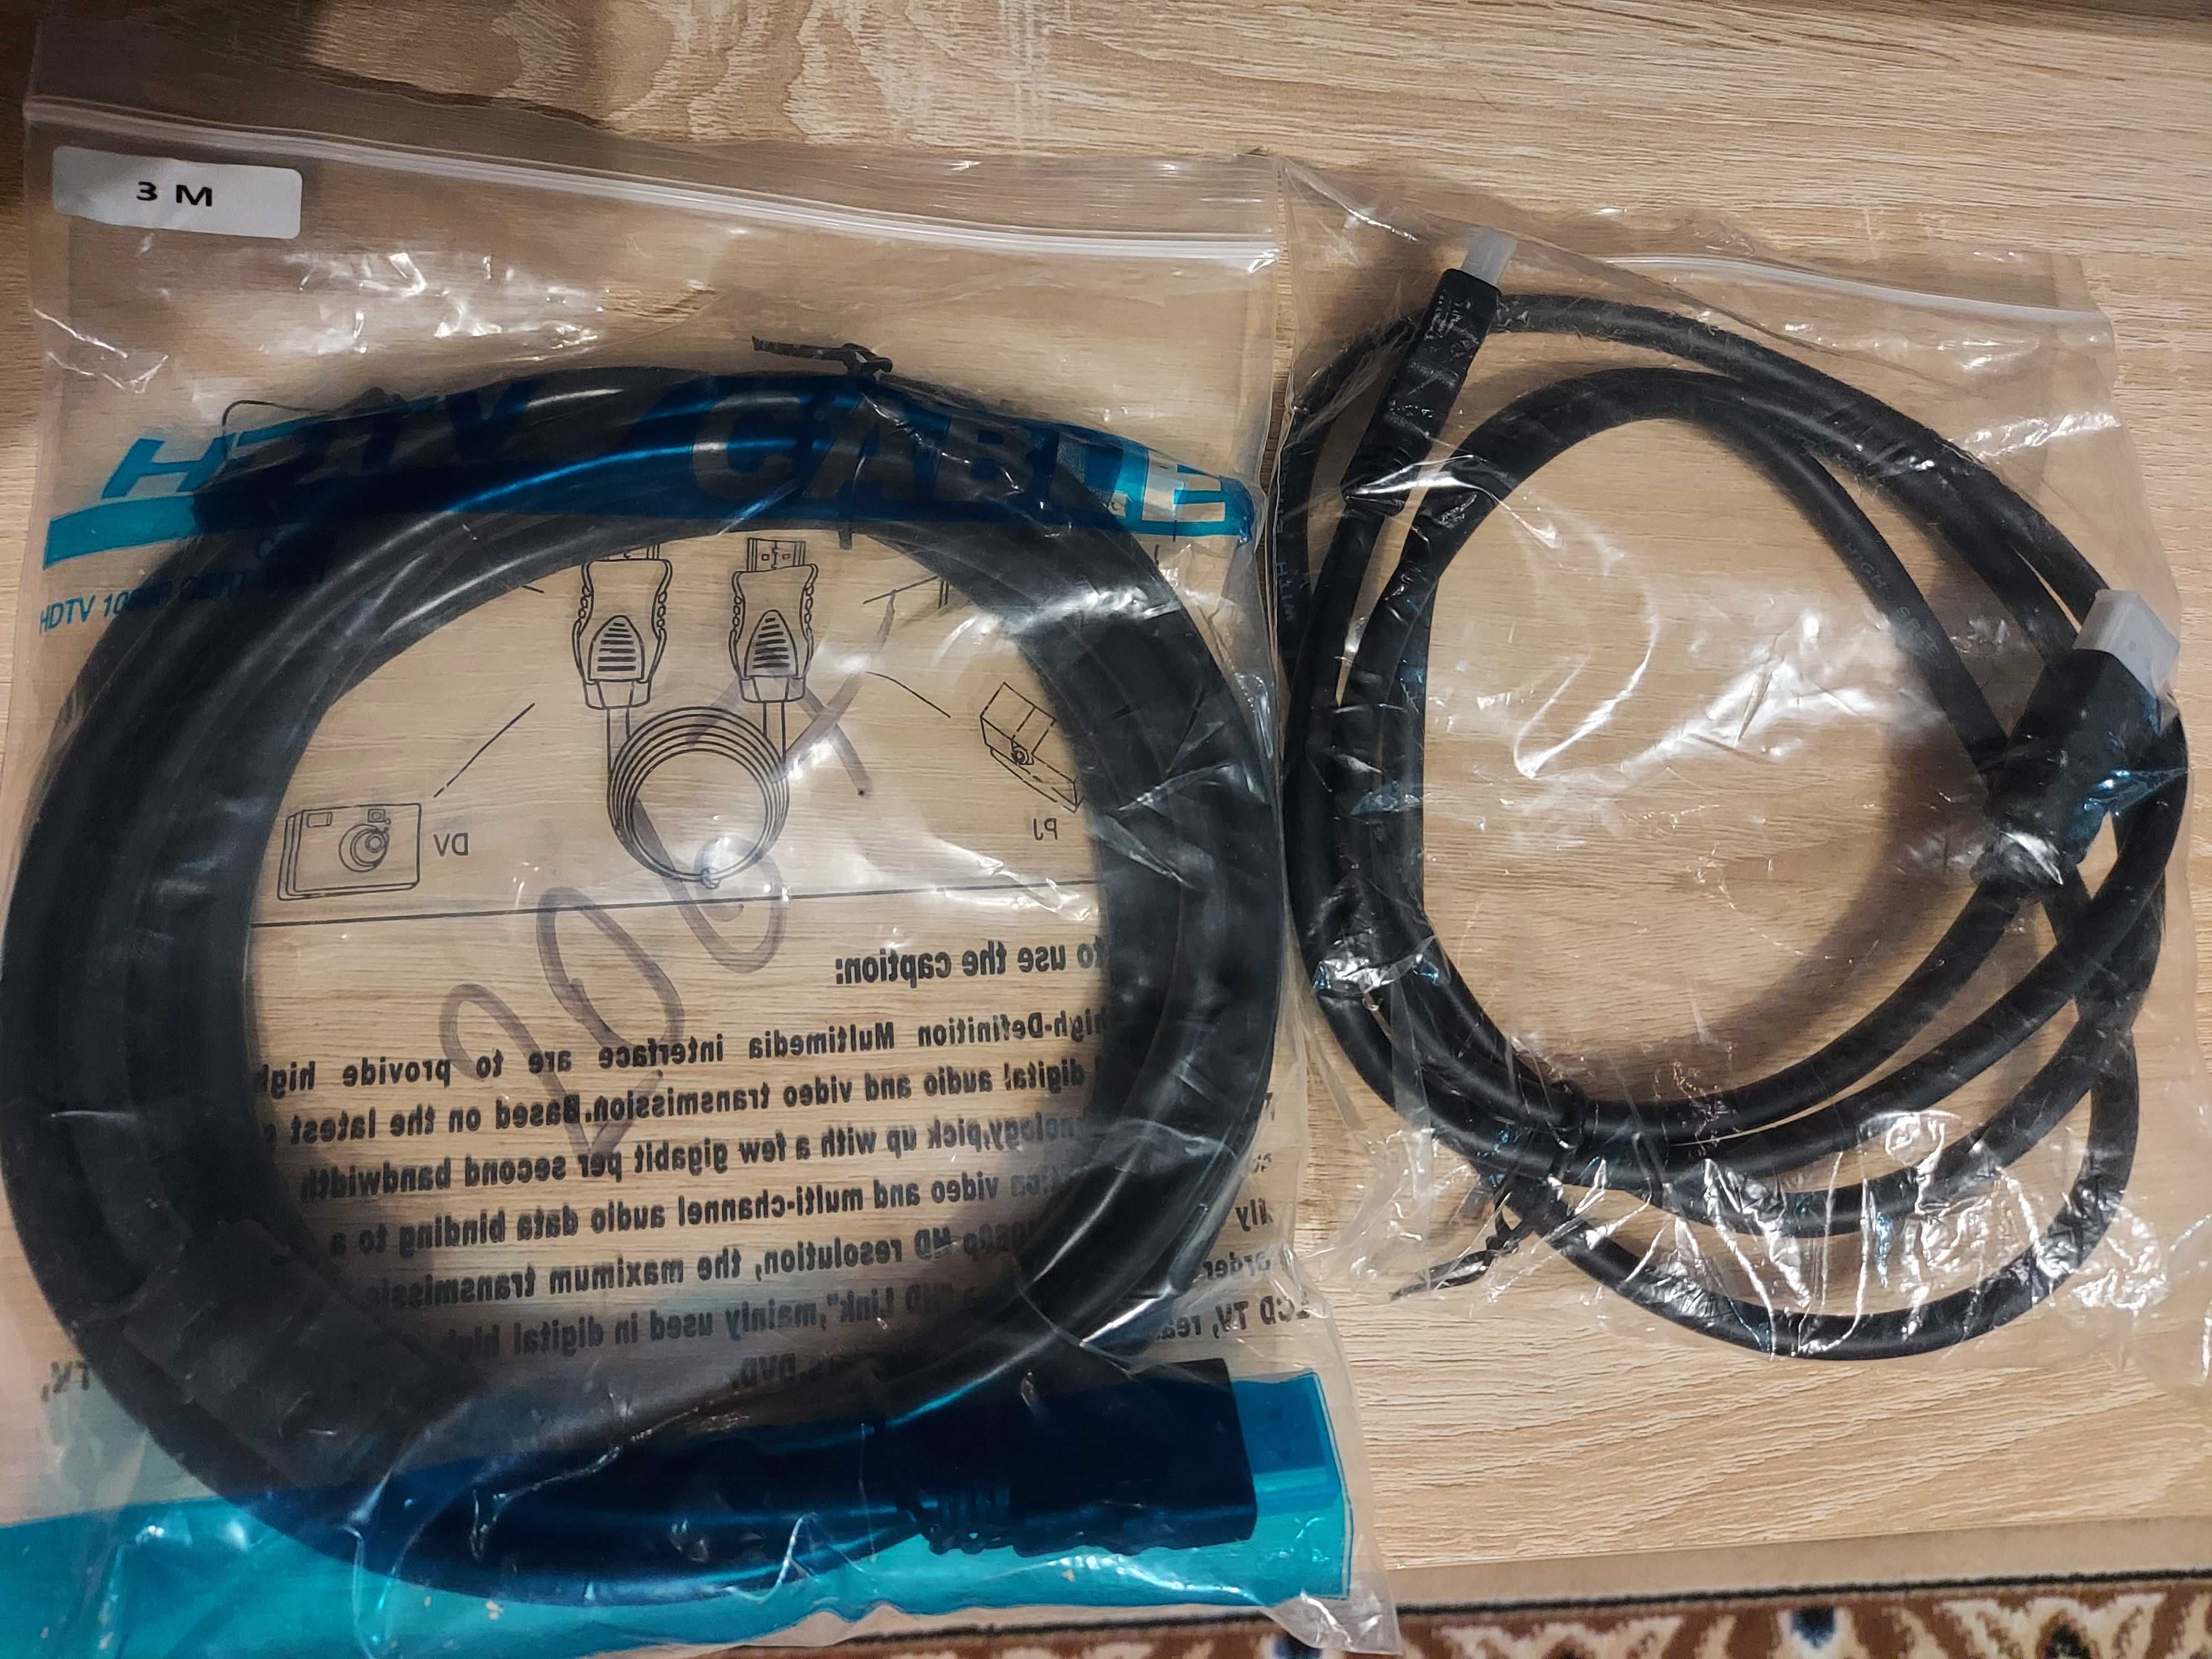 продам кабели hdmi-hdmi новые в упаковках, 1,5 метра